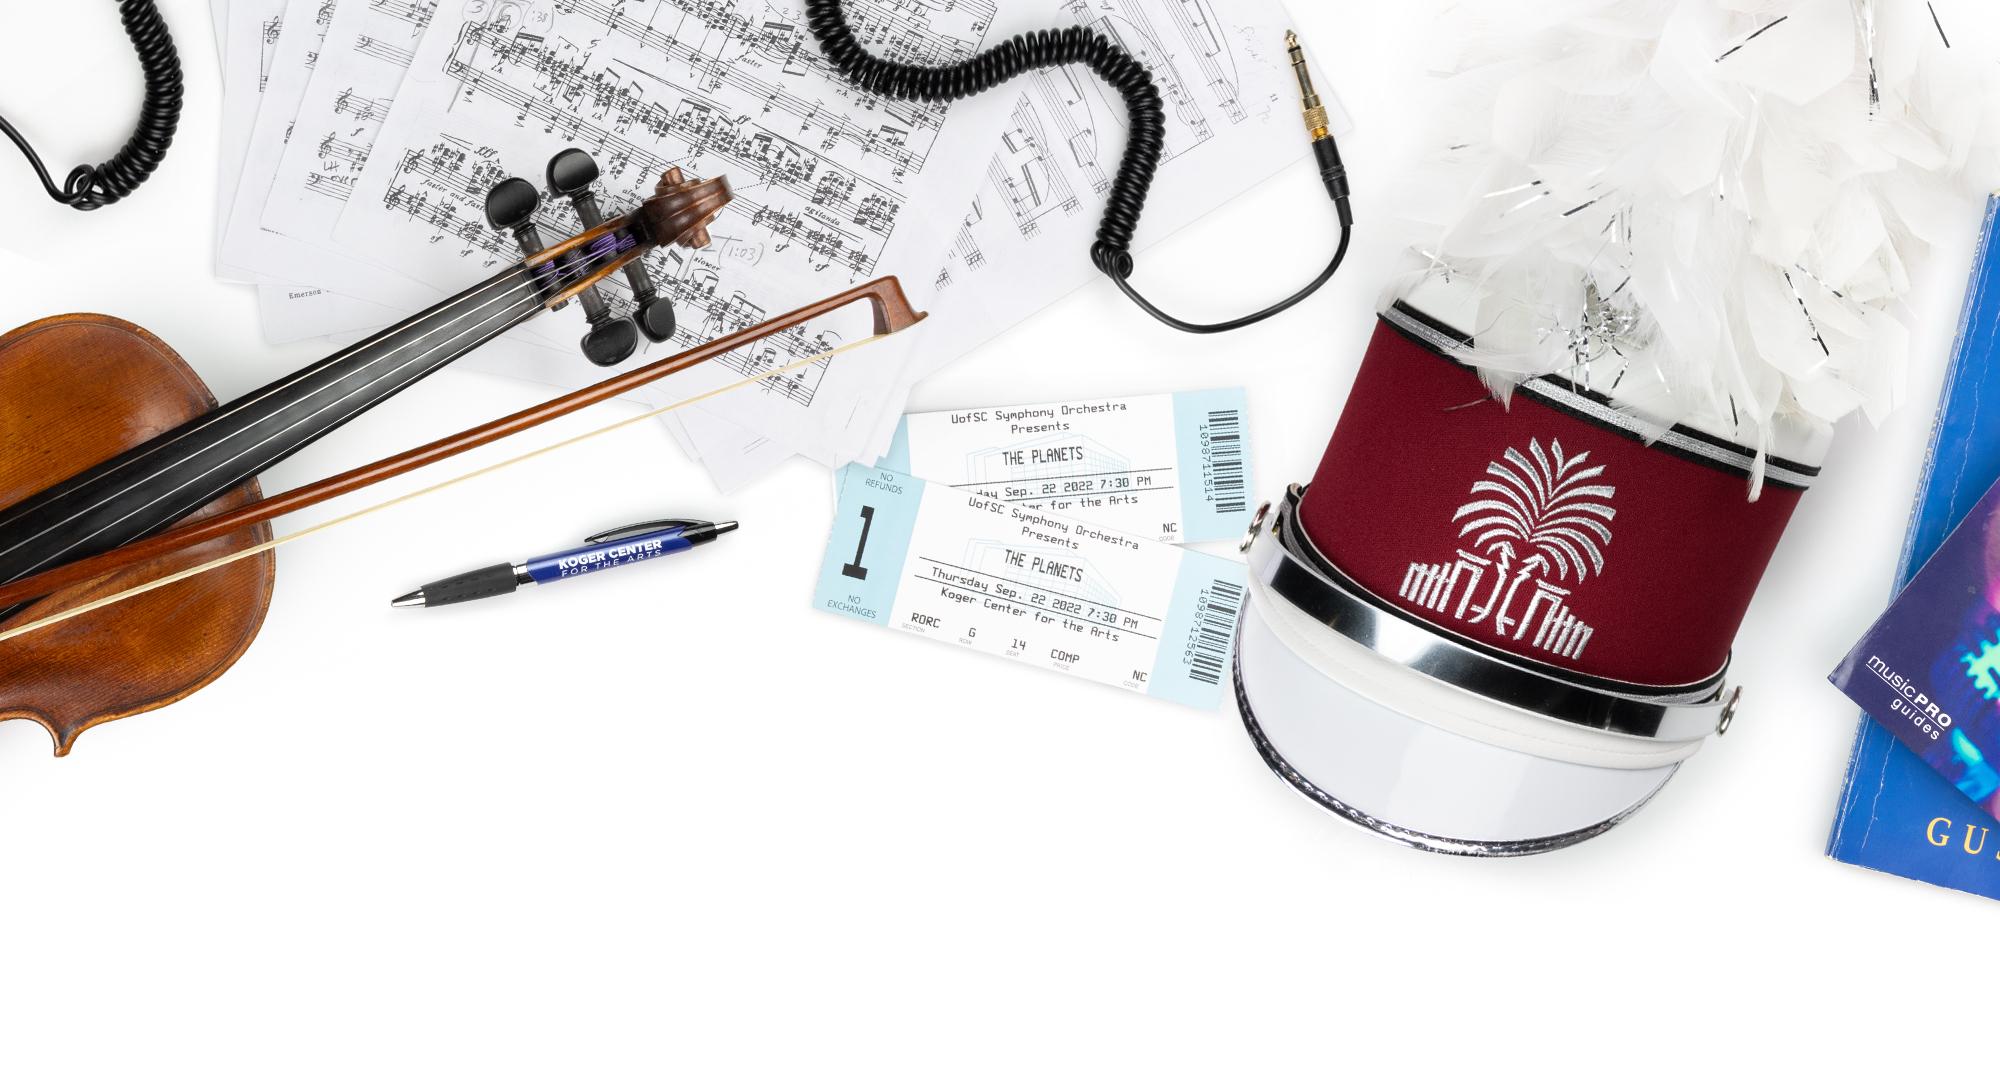 与音乐学院相关的各种物品显示在白色背景上。